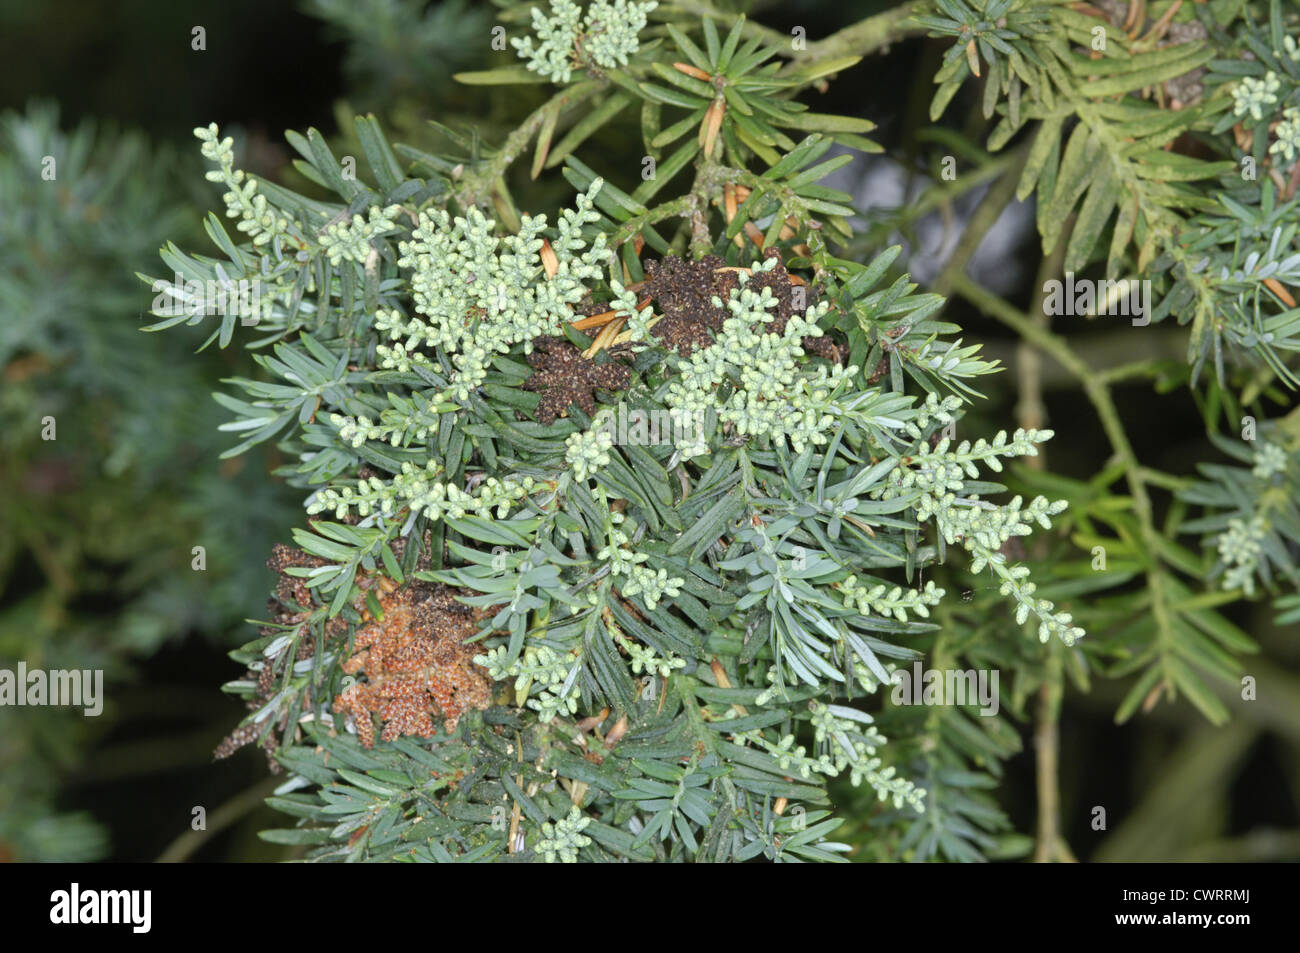 Chilean Plum Yew Prumnopitys andina (Podocarpus andinus) (Podocarpaceae) Stock Photo